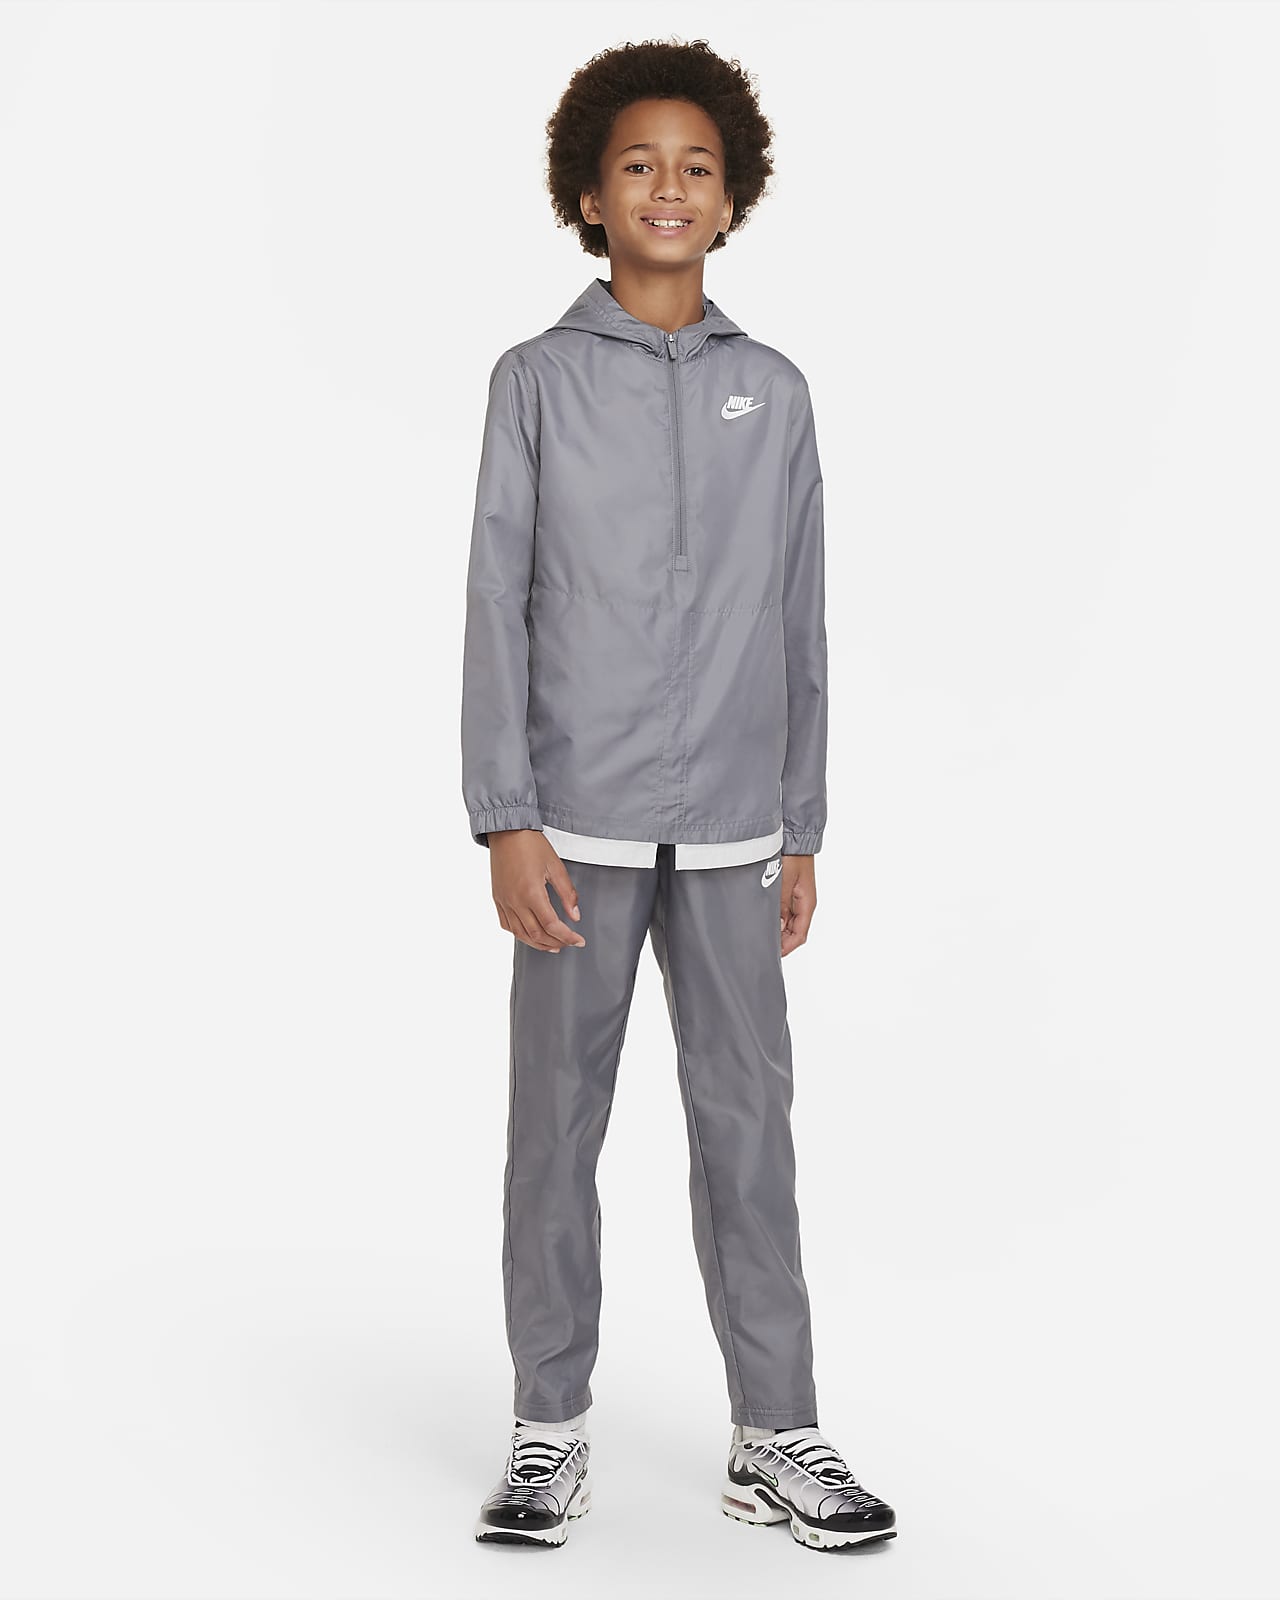 Sportswear Kids' Woven Nike.com